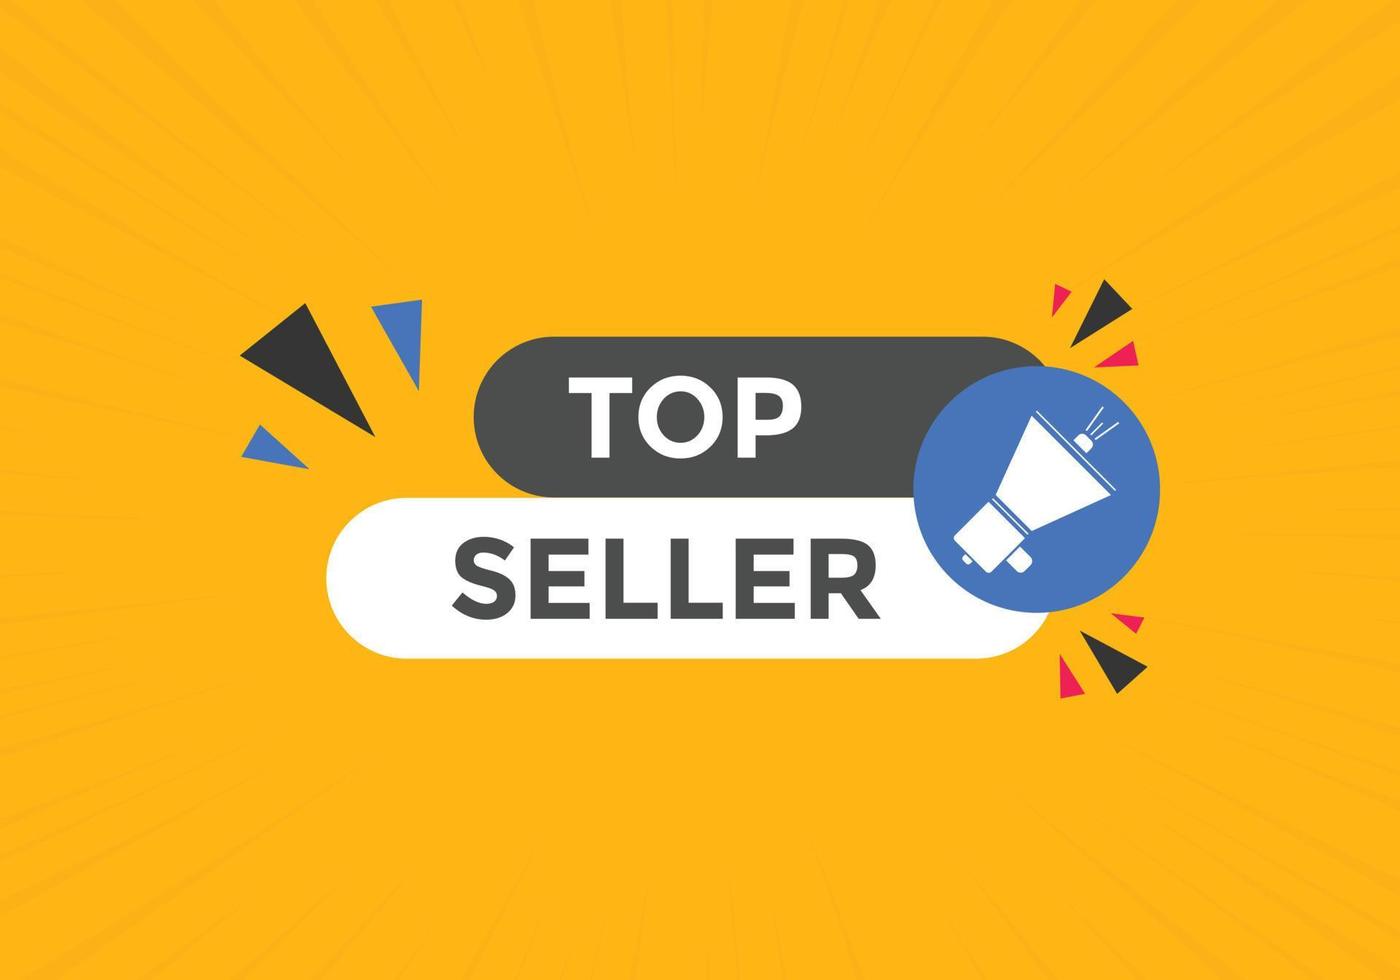 botón de texto del vendedor superior. burbuja de diálogo. banner web colorido de mejor vendedor. ilustración vectorial vector